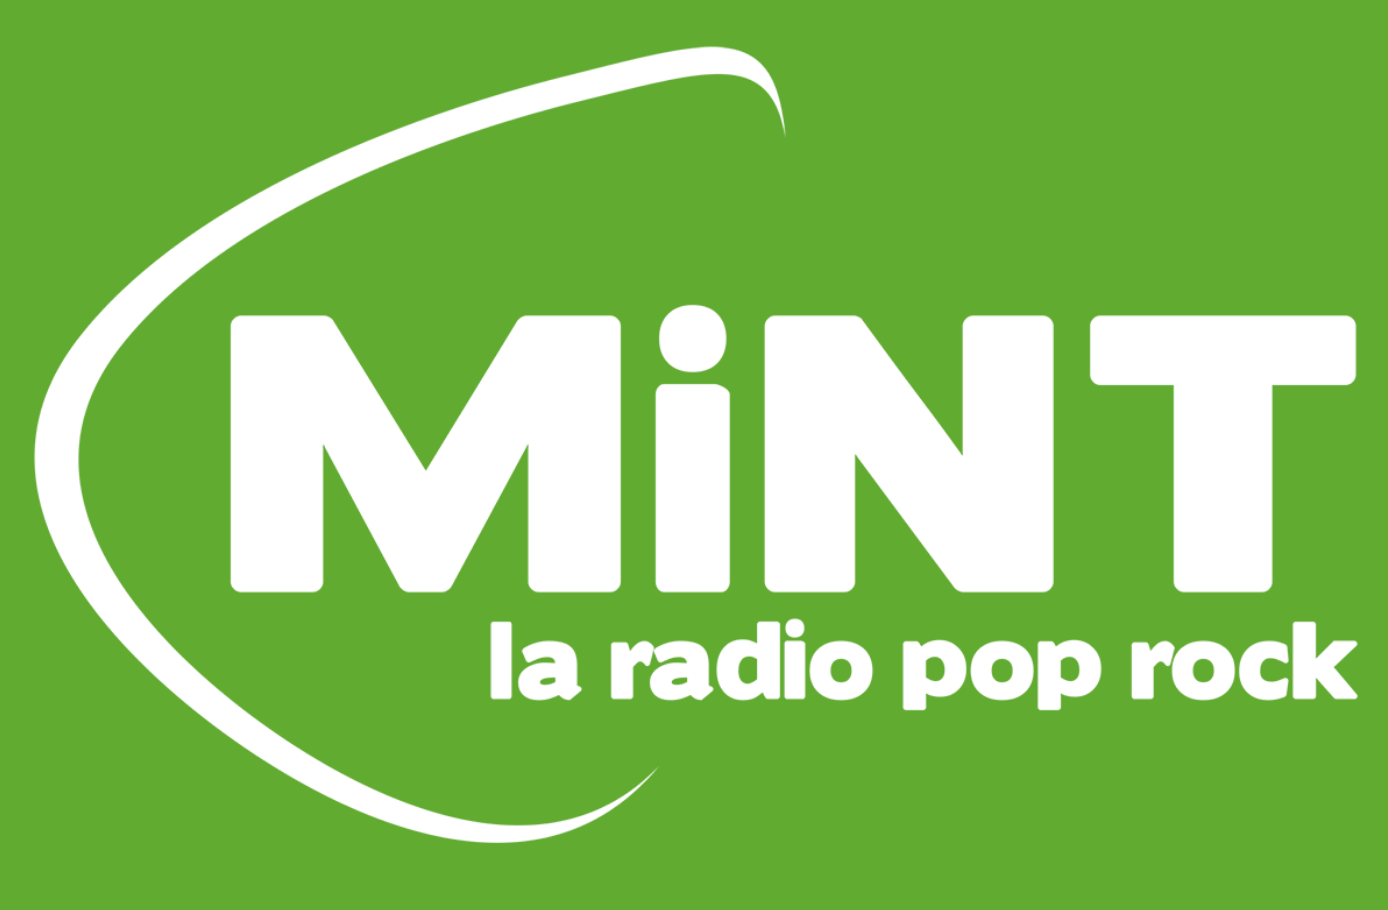 Plan de fréquences 2019 : la radio MiNT ne convainc pas